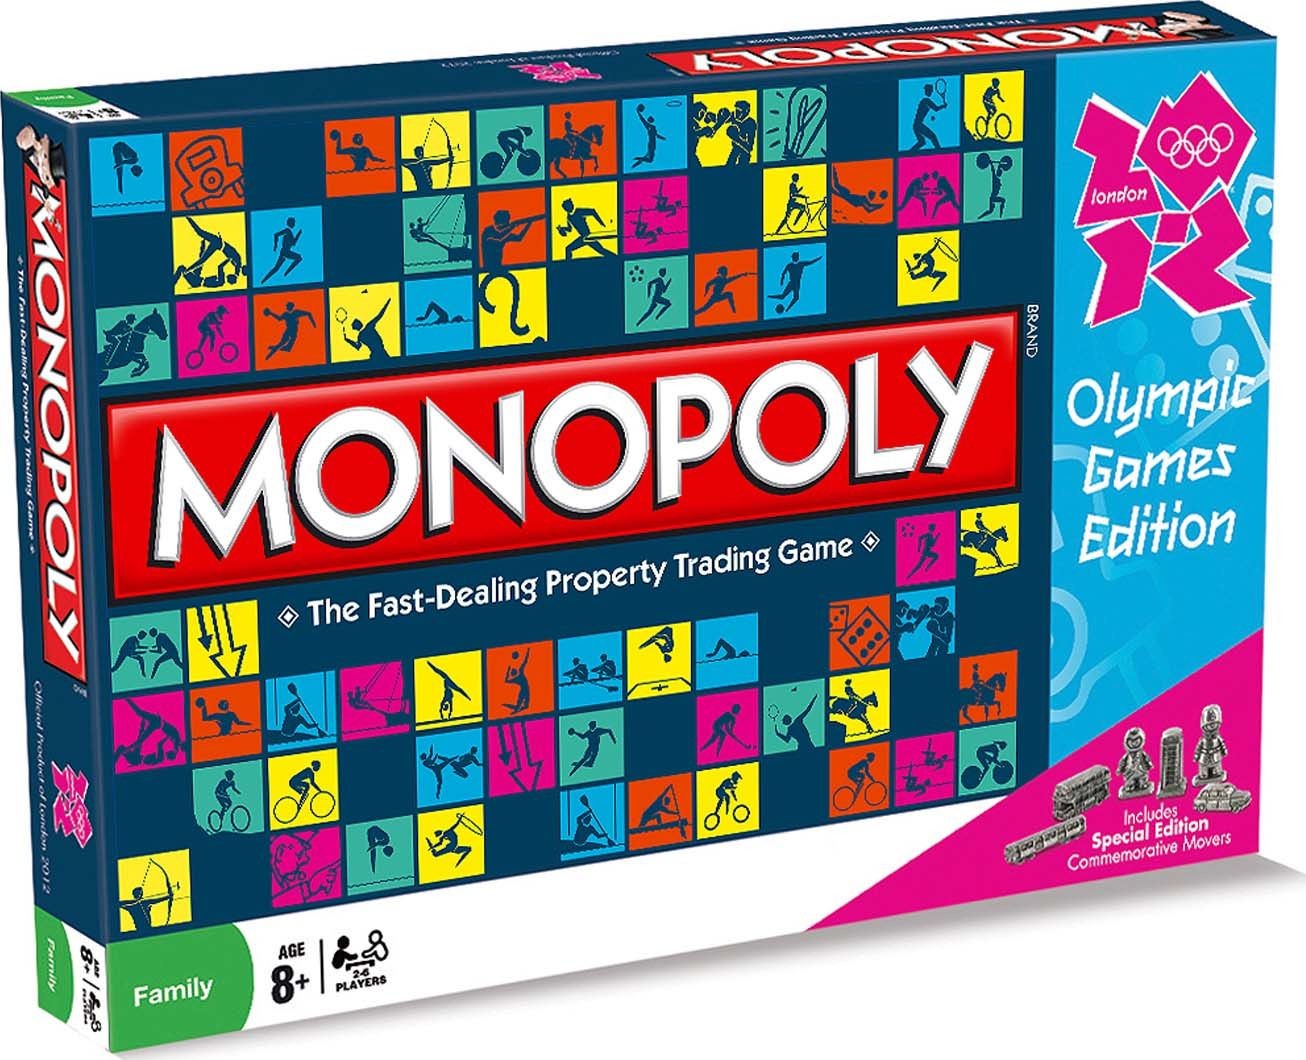 Boite du Monopoly London 2012